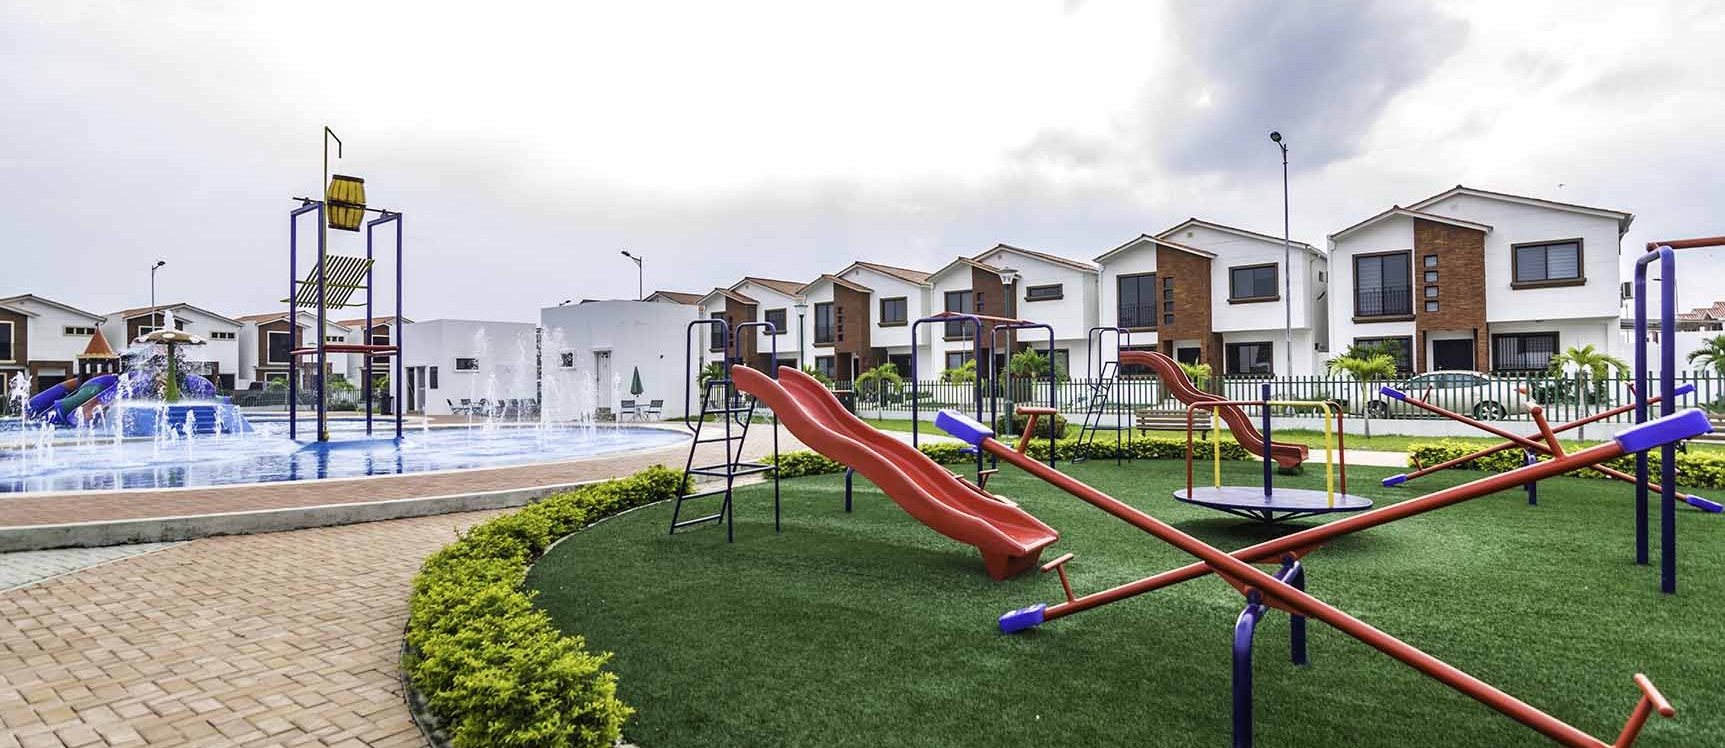 GeoBienes - Casa en Venta Urbanización Napoli - Vía Samborondón - Plusvalia Guayaquil Casas de venta y alquiler Inmobiliaria Ecuador